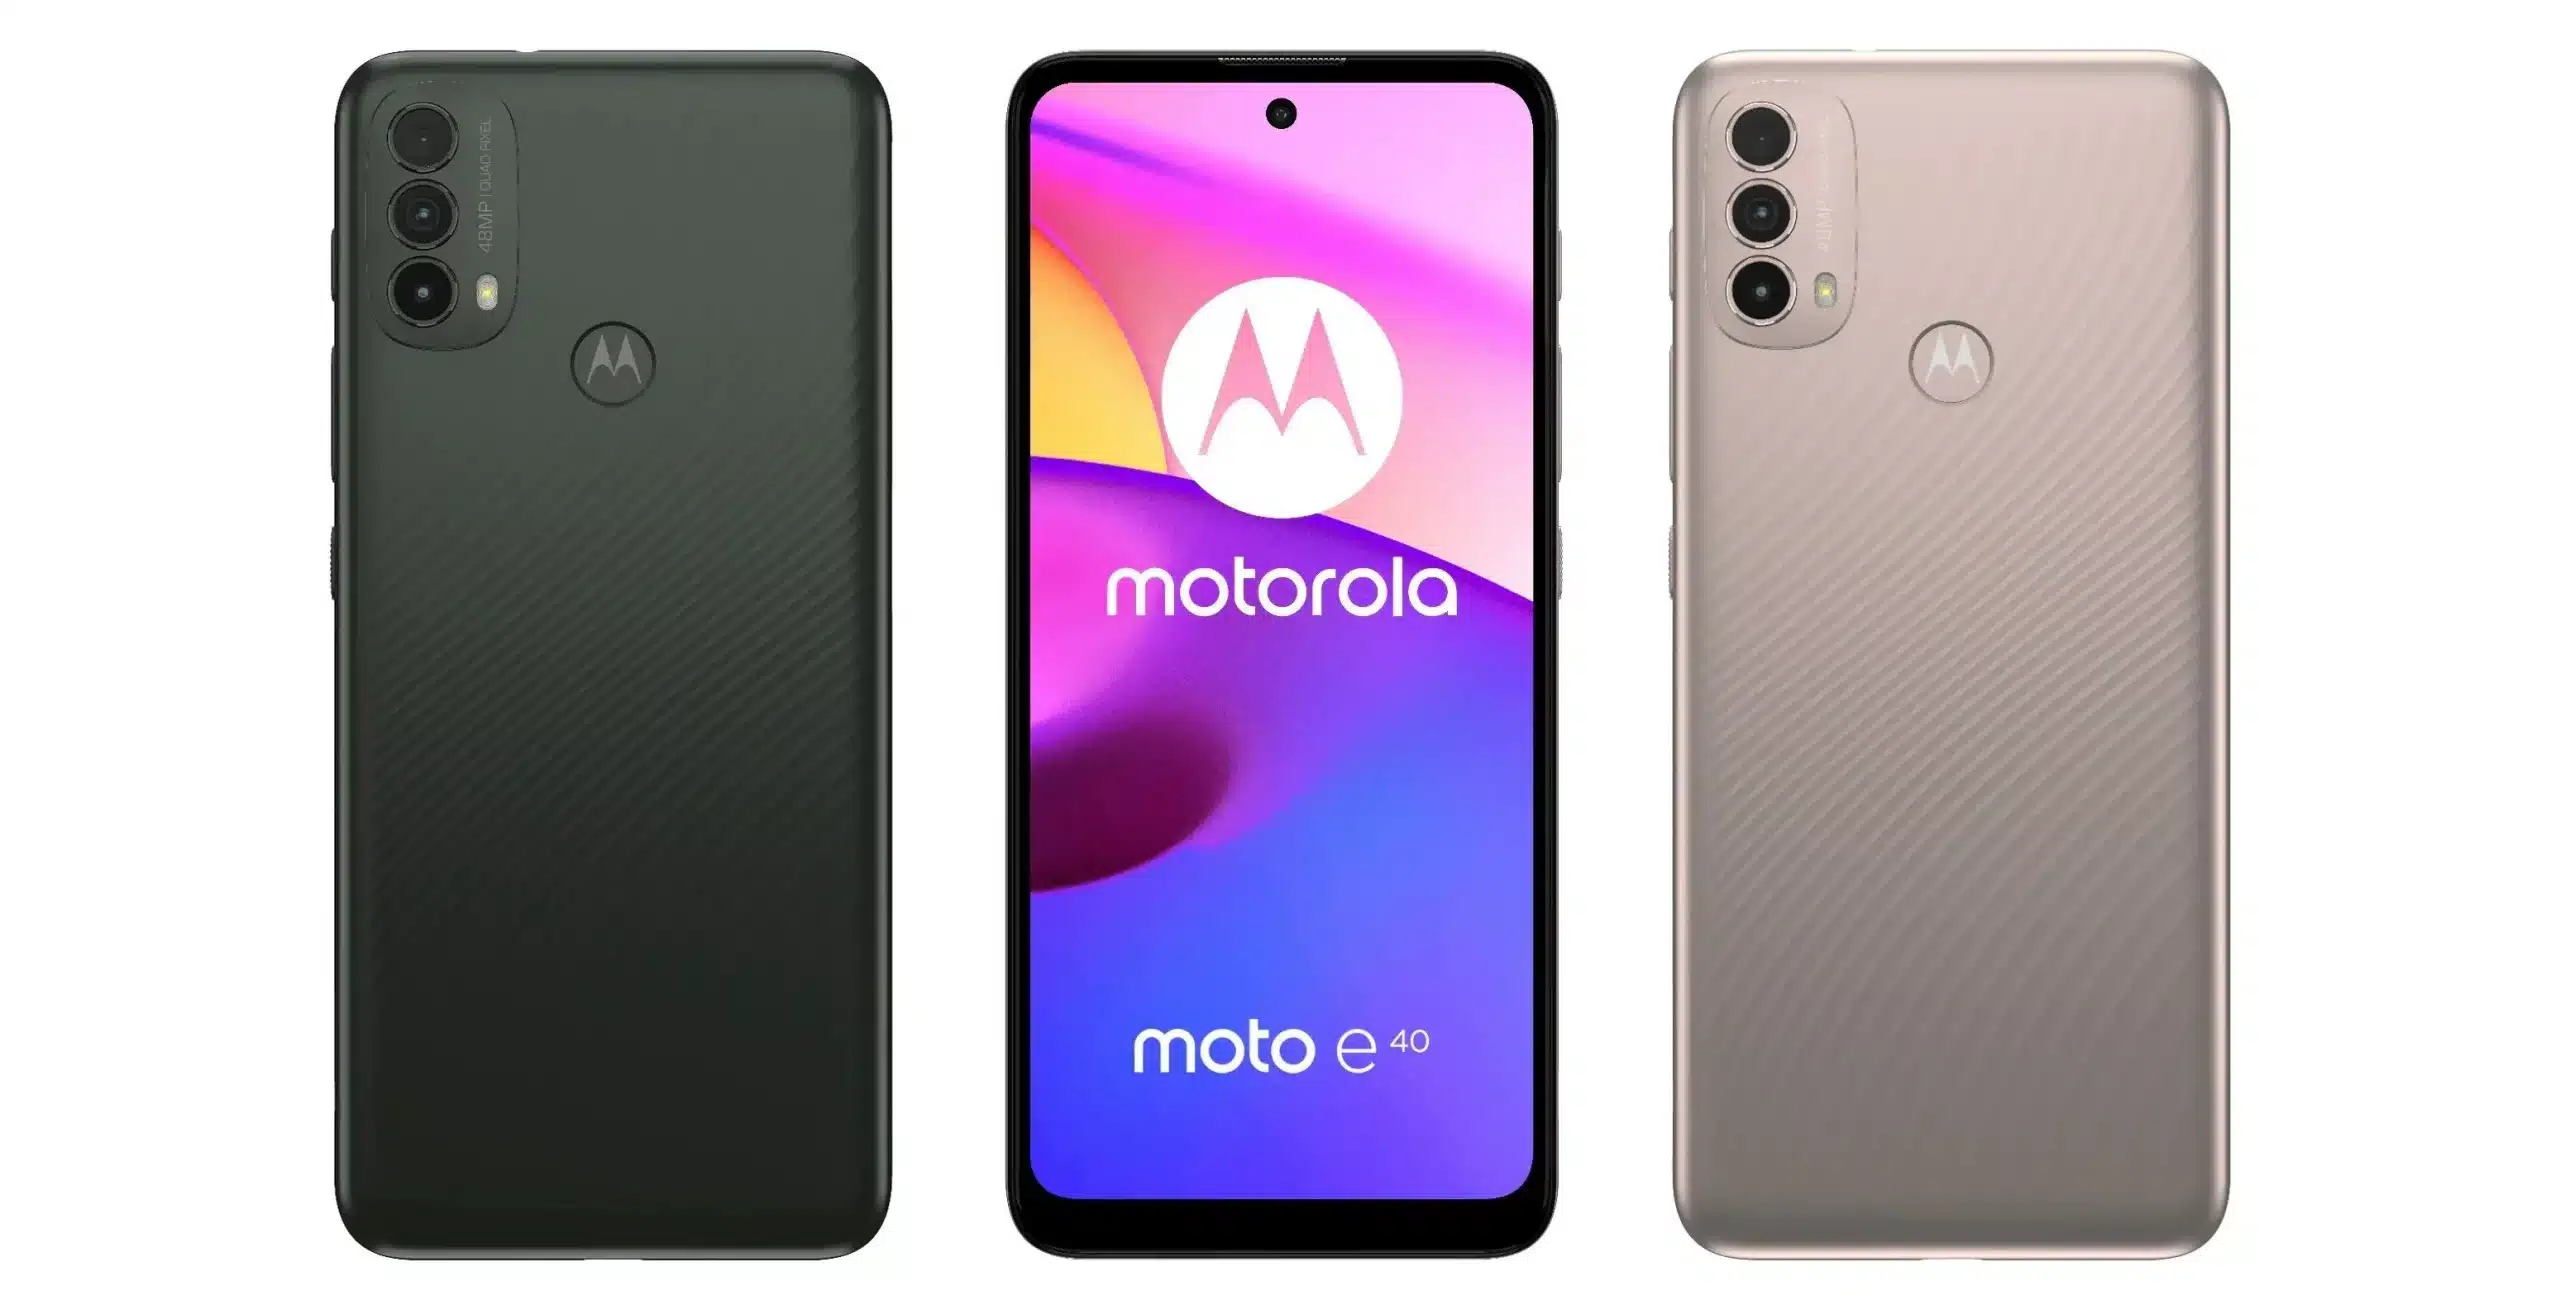 Motorola E40 both colors